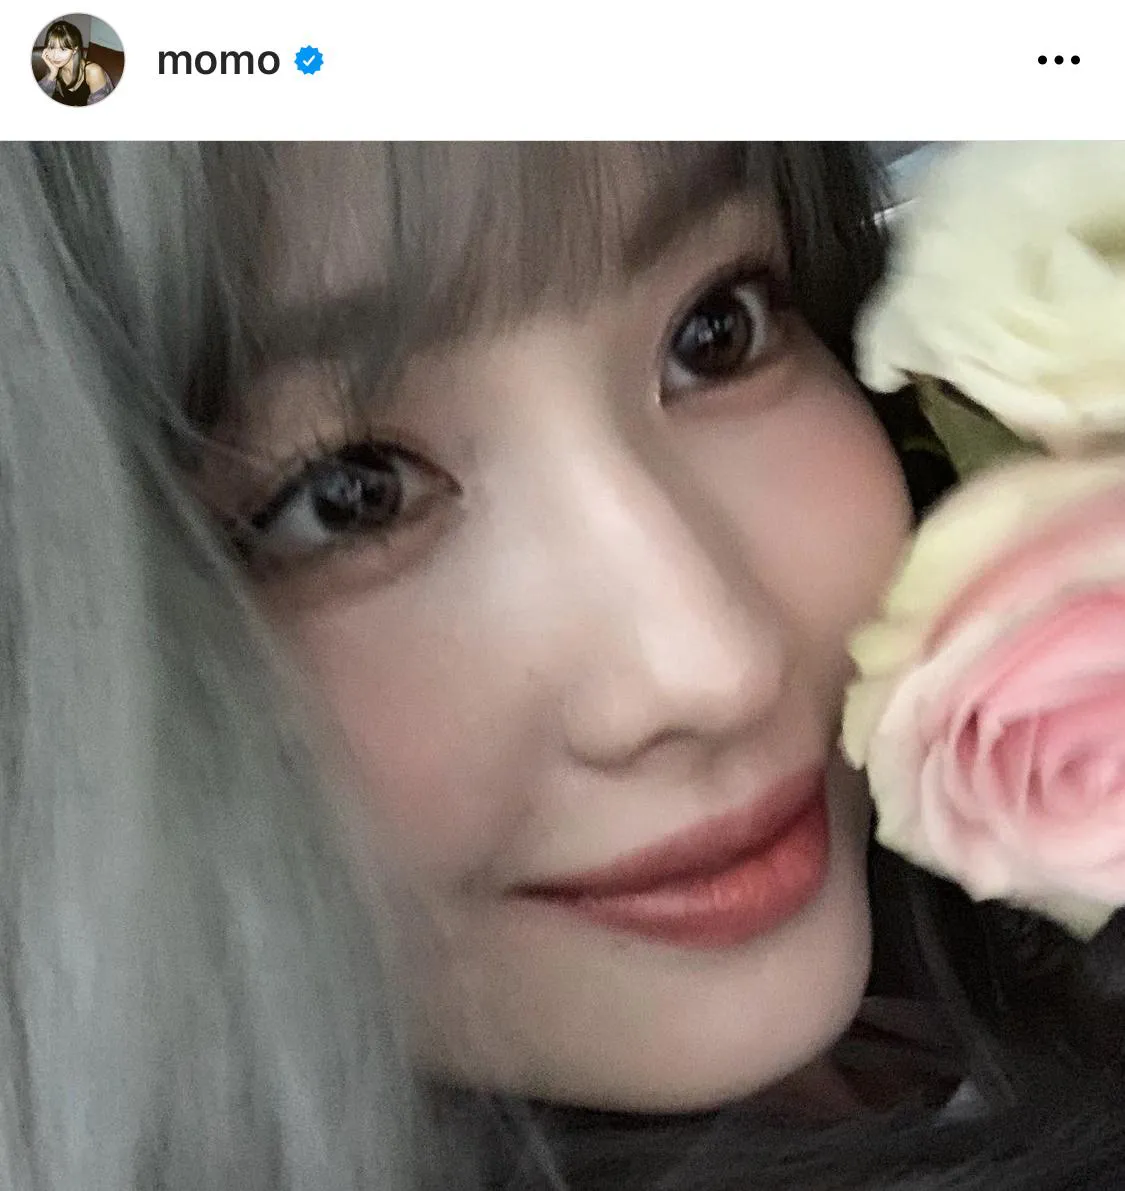 ※モモの公式Instagram(momo)からのスクリーンショット